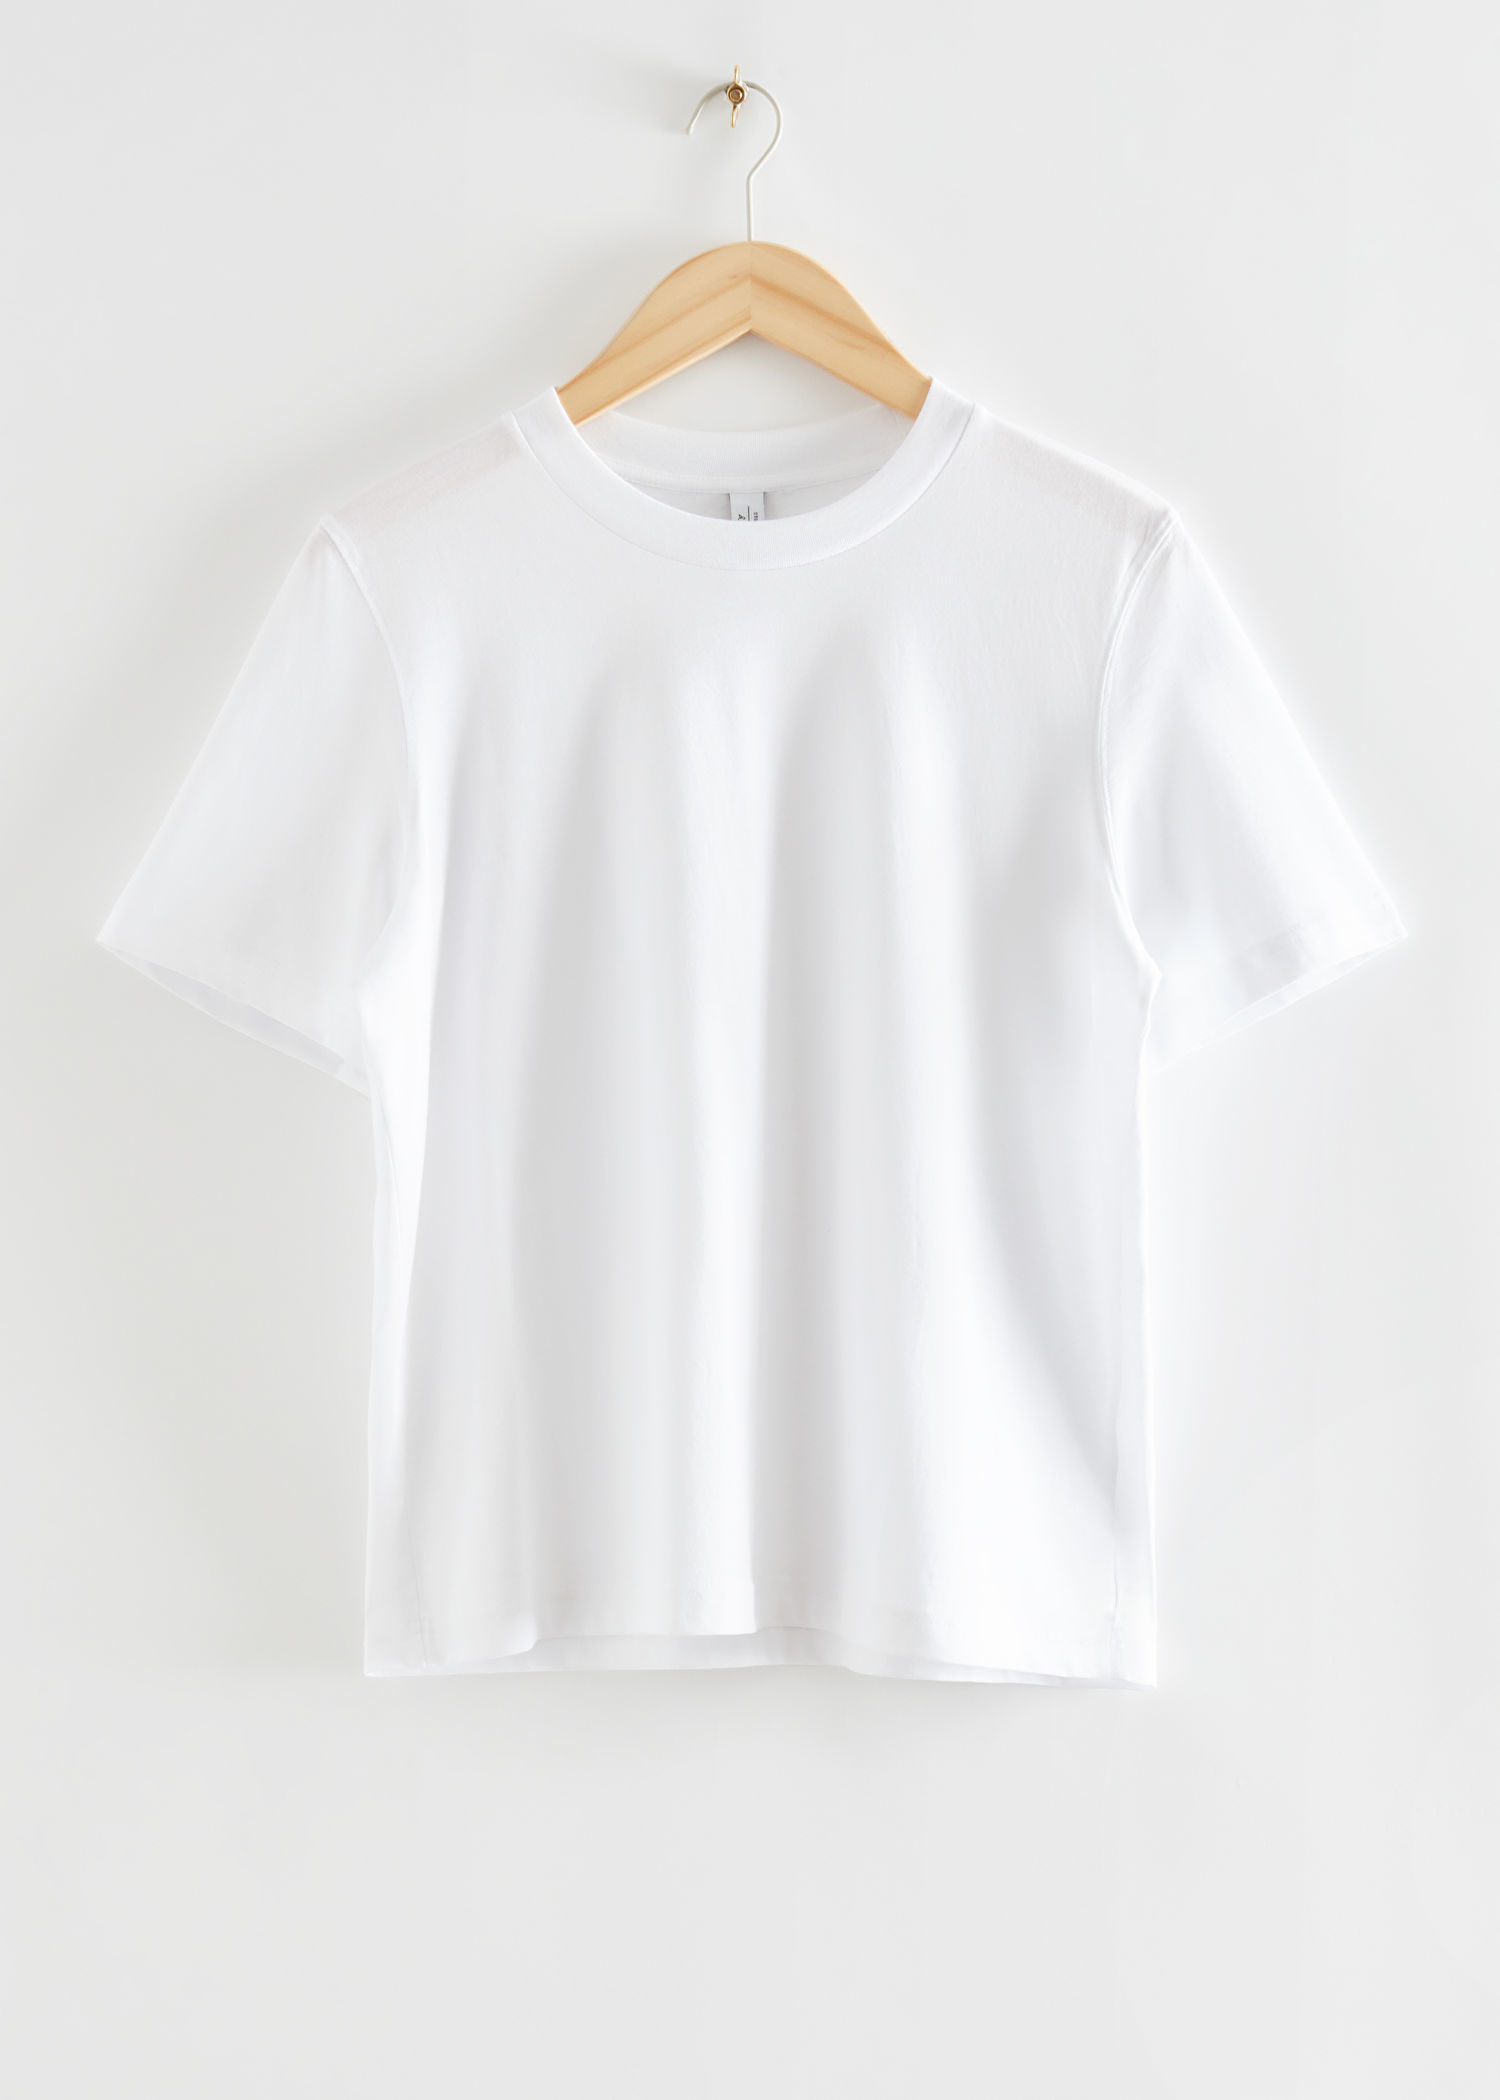 Camiseta blanca de algodón orgánico de & Other Stories (22 euros).